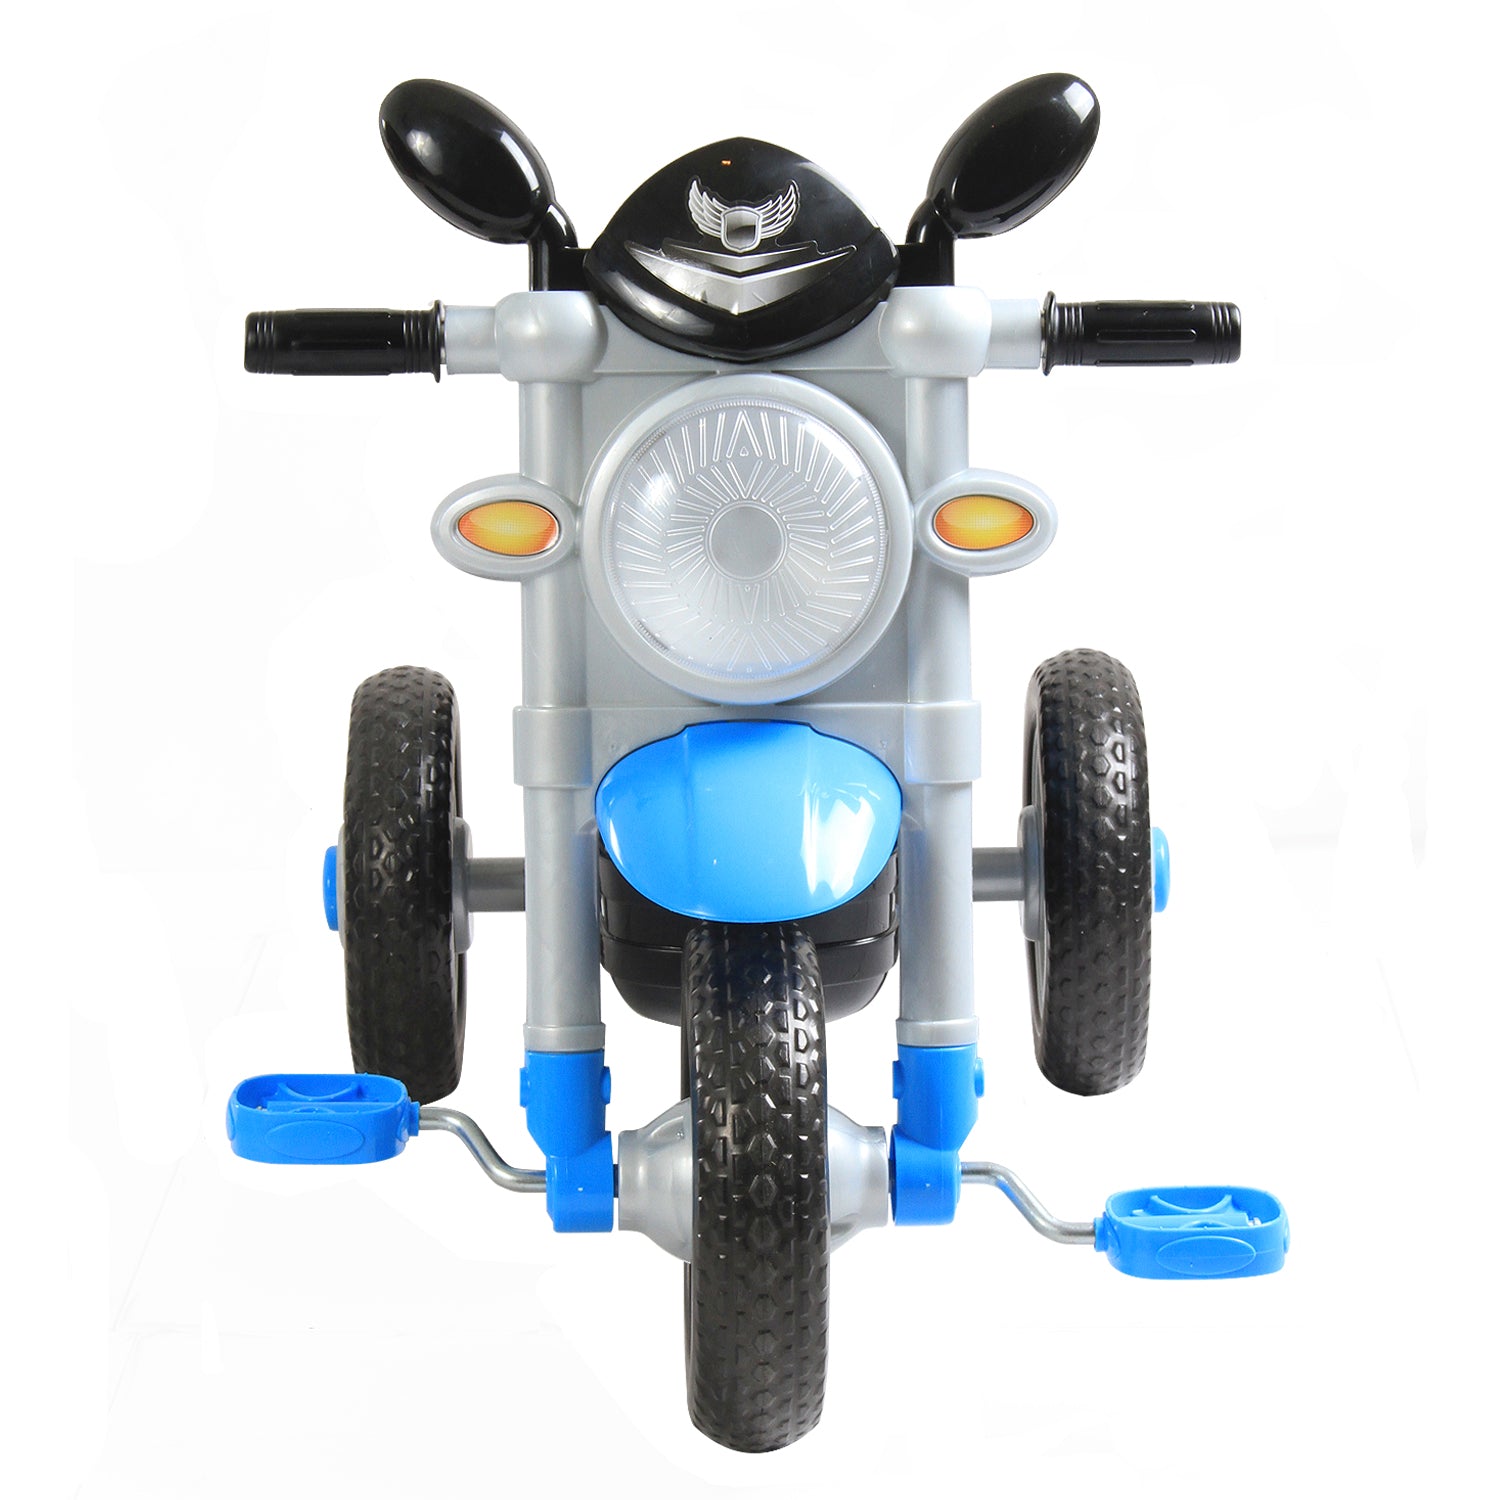 Triciclo Moto Azul